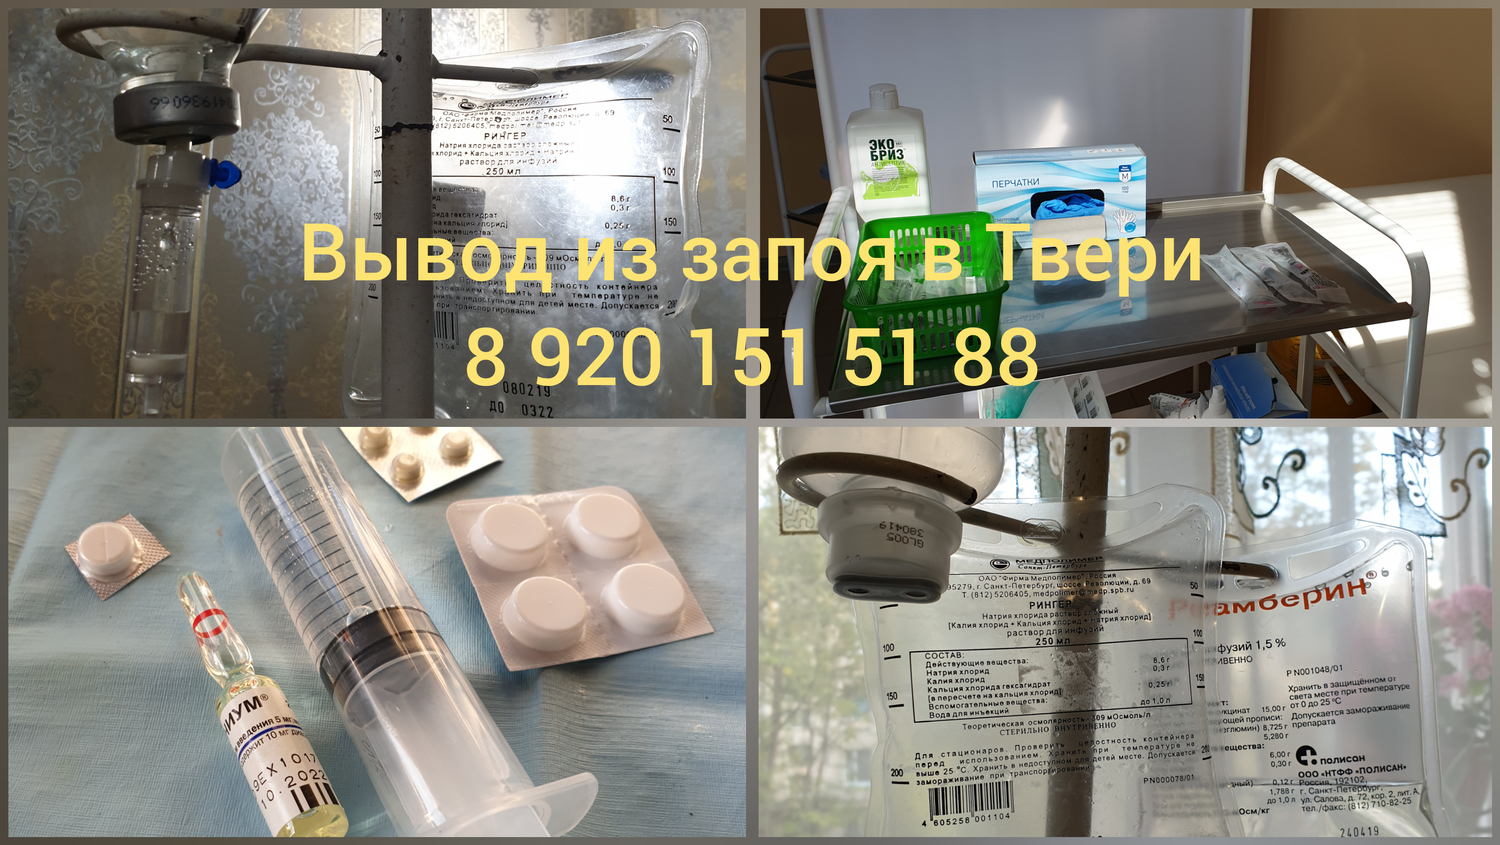 Вывод из запоя стационар 89011325858. Вывод из запоя. Таблетки для вывода из запоя. +Список лекарств для выведения из запоя. Вывод из запоя на дому в Ульяновске новый город.